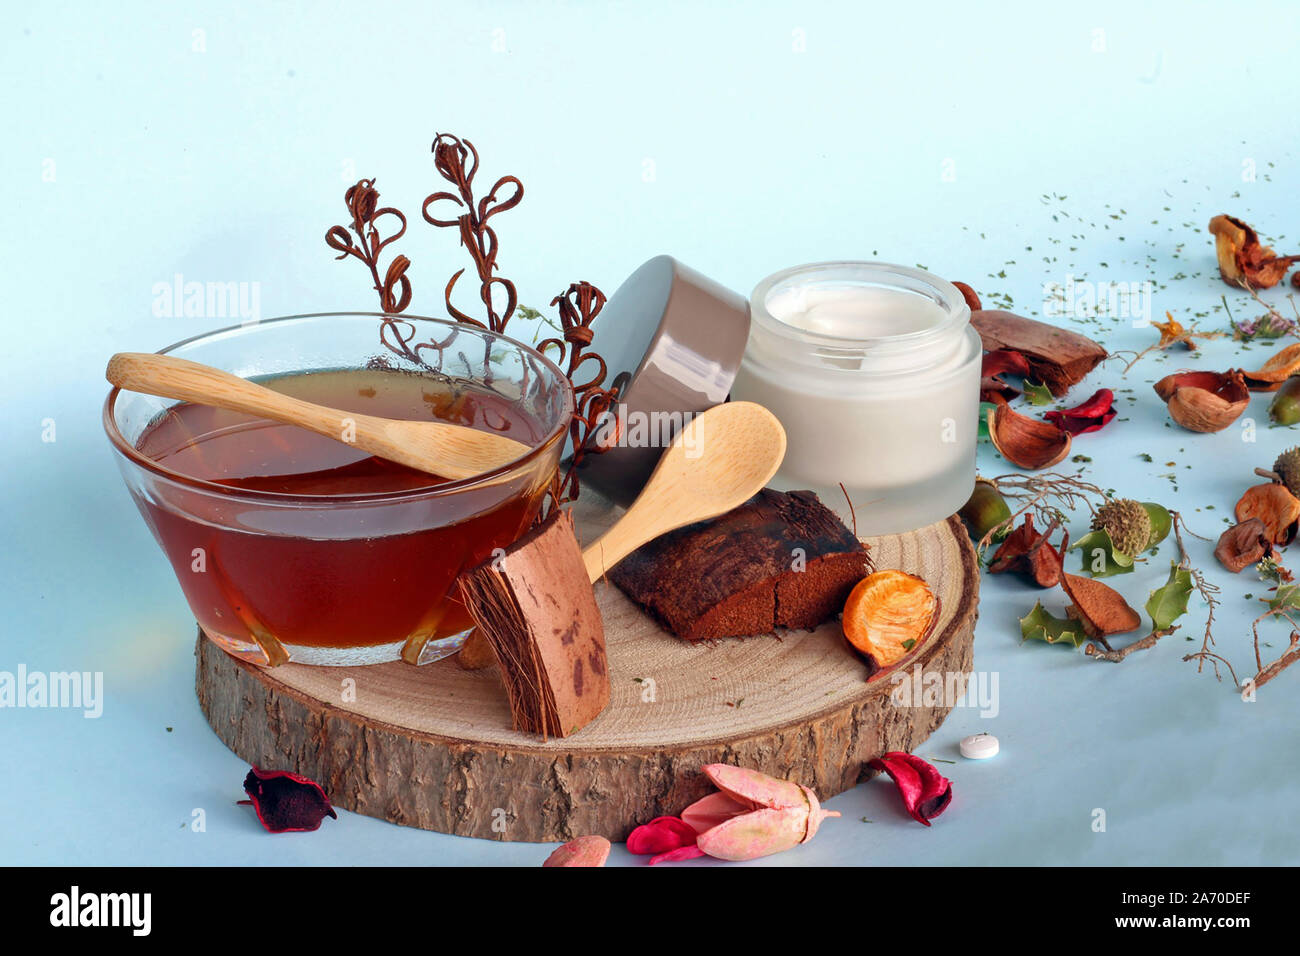 Medicina Natural: aceite esencial dentro de una jarra y un frasco con crema natural. Medicina alternativa que respeta el medio ambiente y la salud. Foto de stock